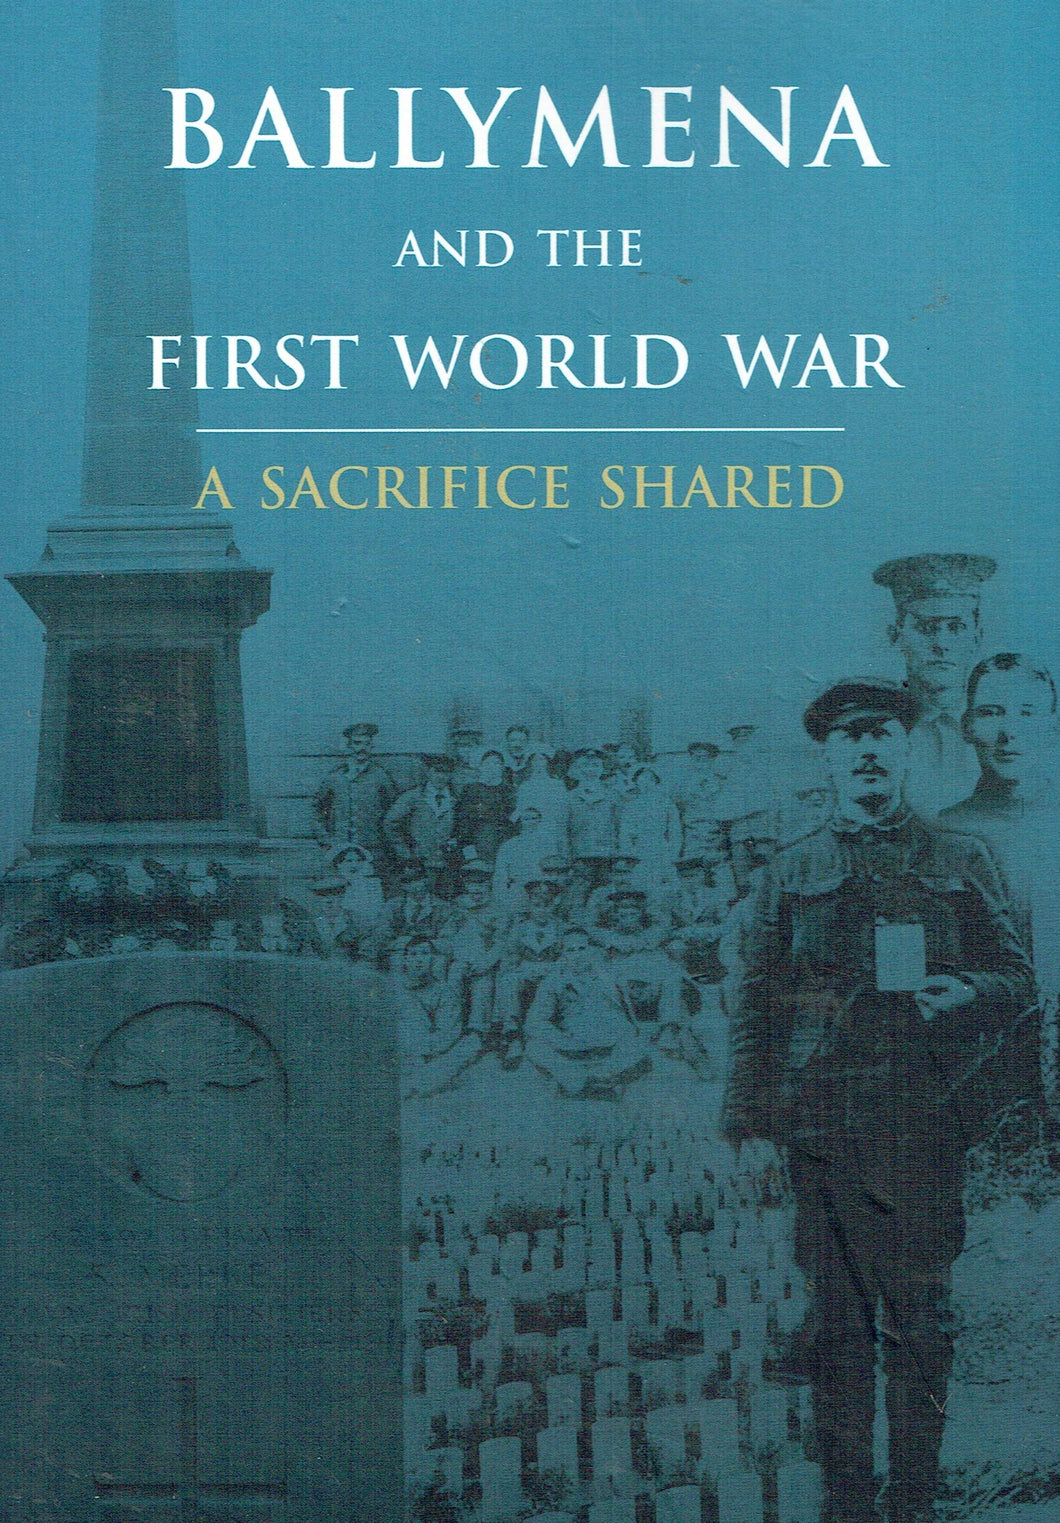 Ballymena and the First World War: A Sacrifice Shared